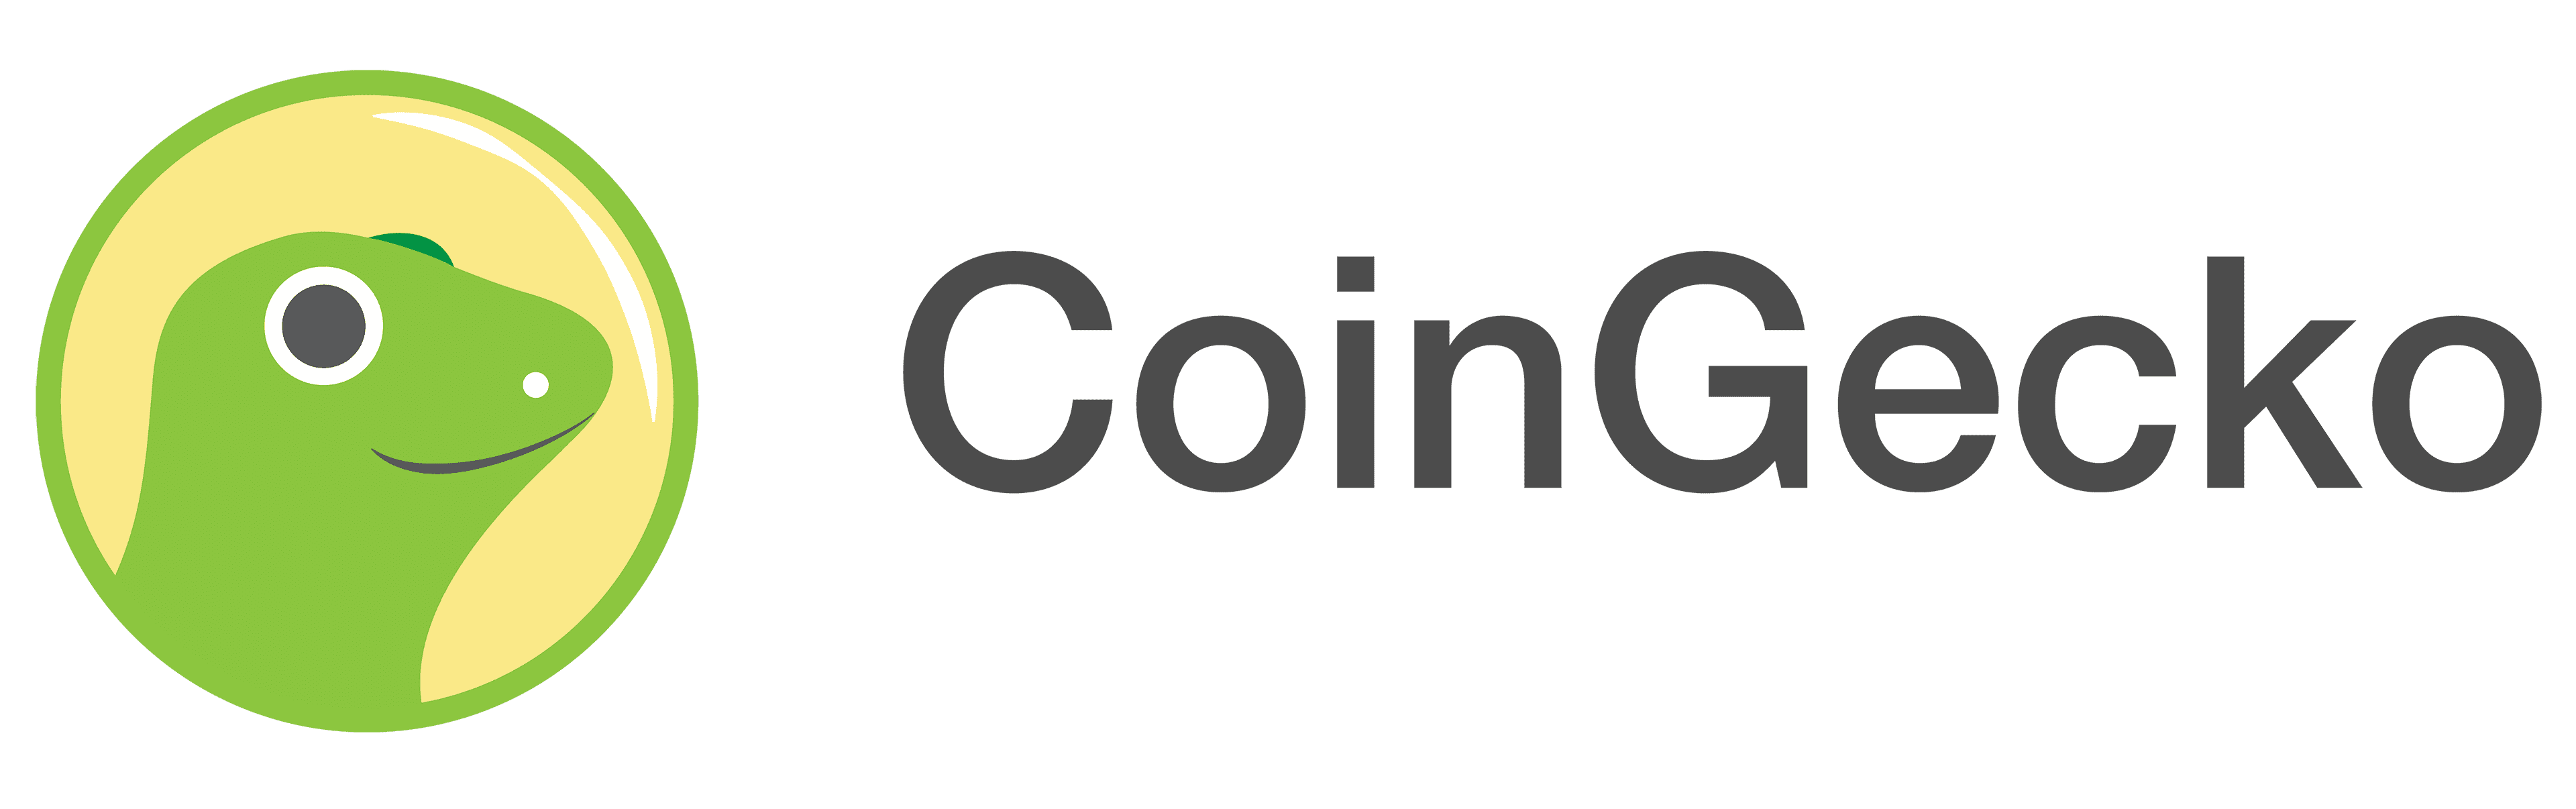 CoinGecko-logo